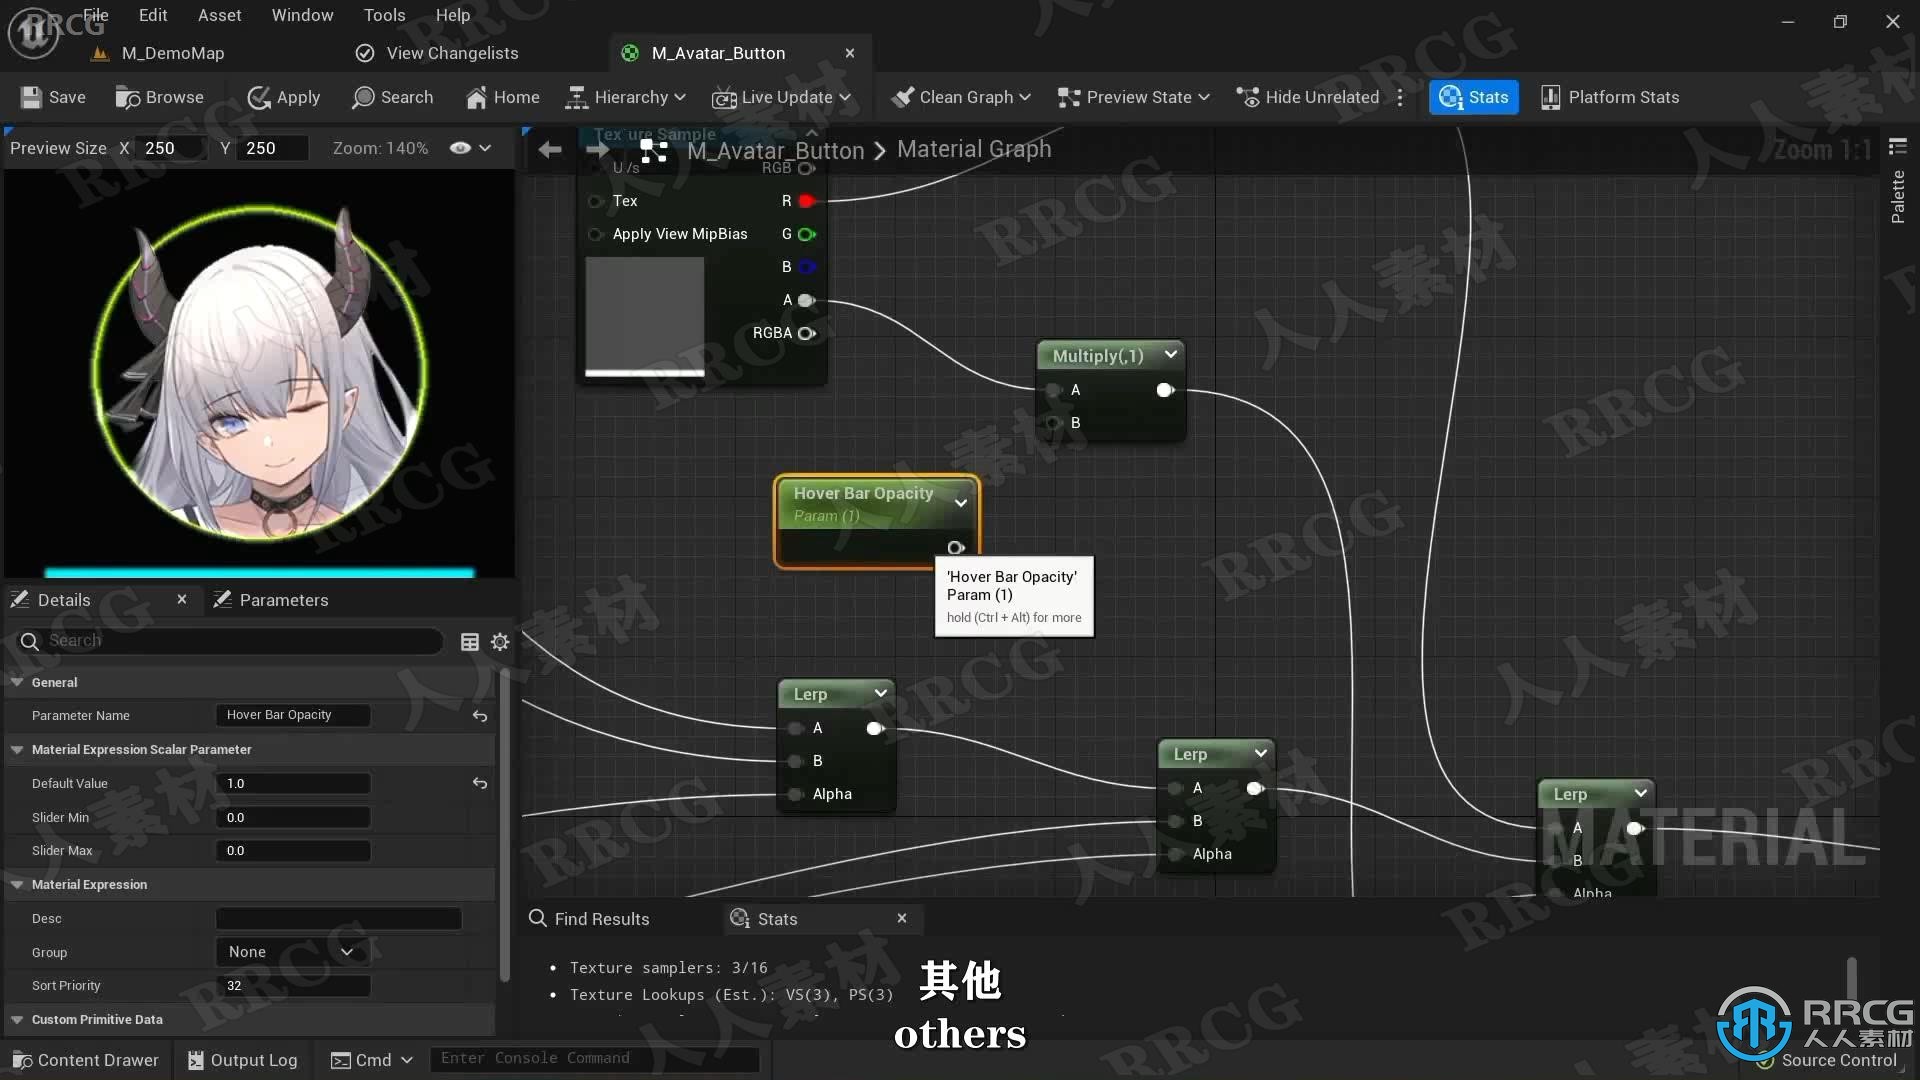 【中文字幕】UE5虚幻引擎交互式游戏菜单UI蓝图制作视频教程